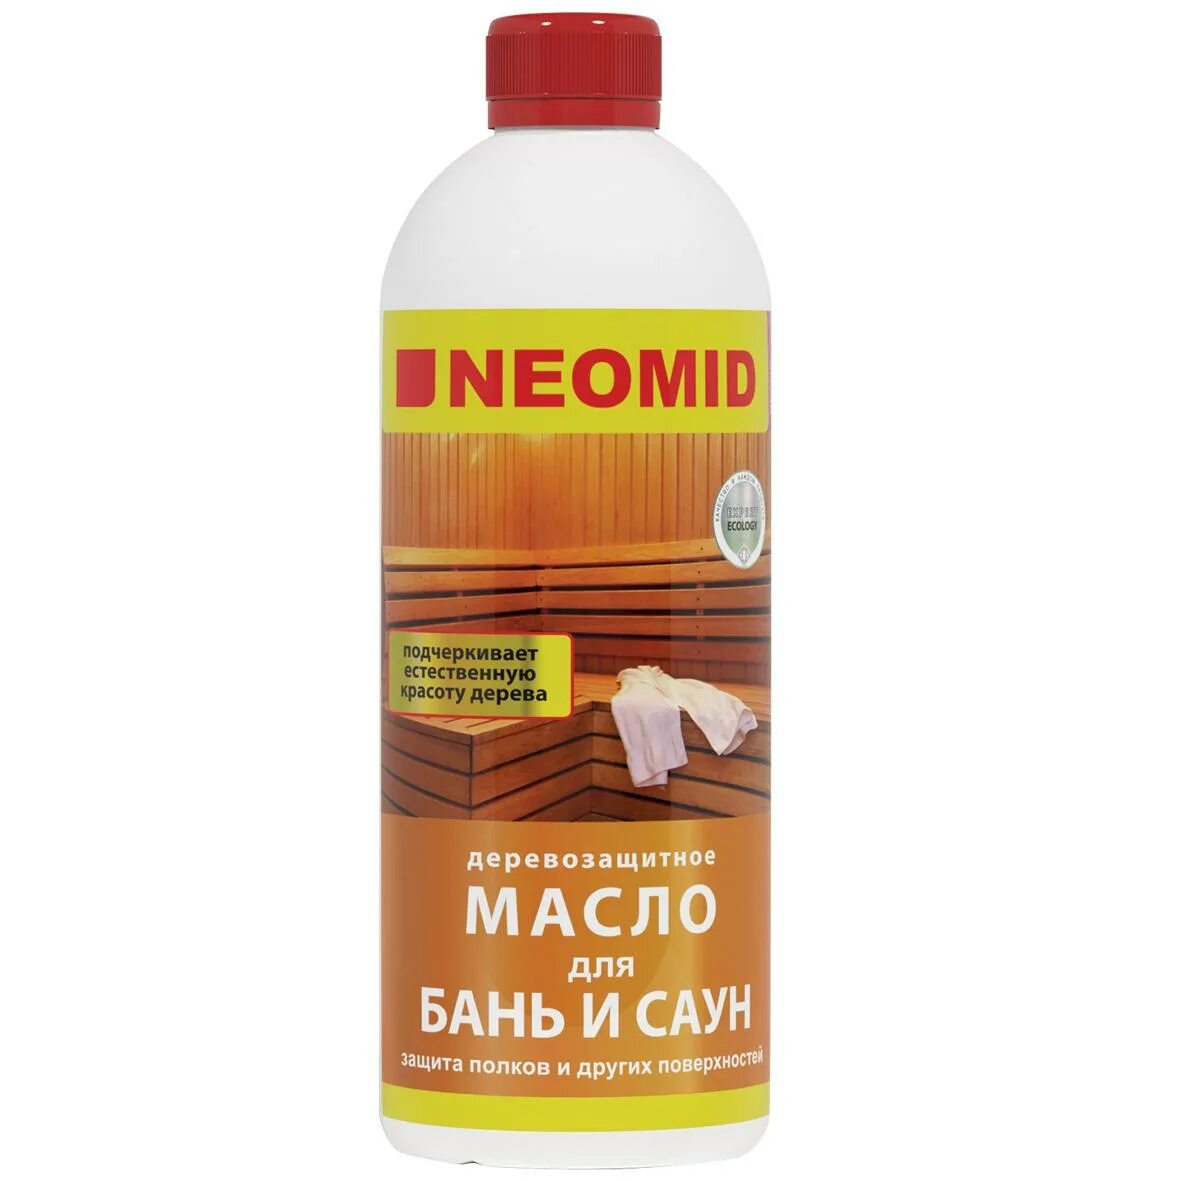 Пропитка маслом бани. NEOMID масло деревозащитное для бань и саун 0,5л. Неомид масло для бань и саун 0,5 л. Пропитка для полков NEOMID 0.5 Л. Масло для бань и саун Неомид 0,5л, шт.